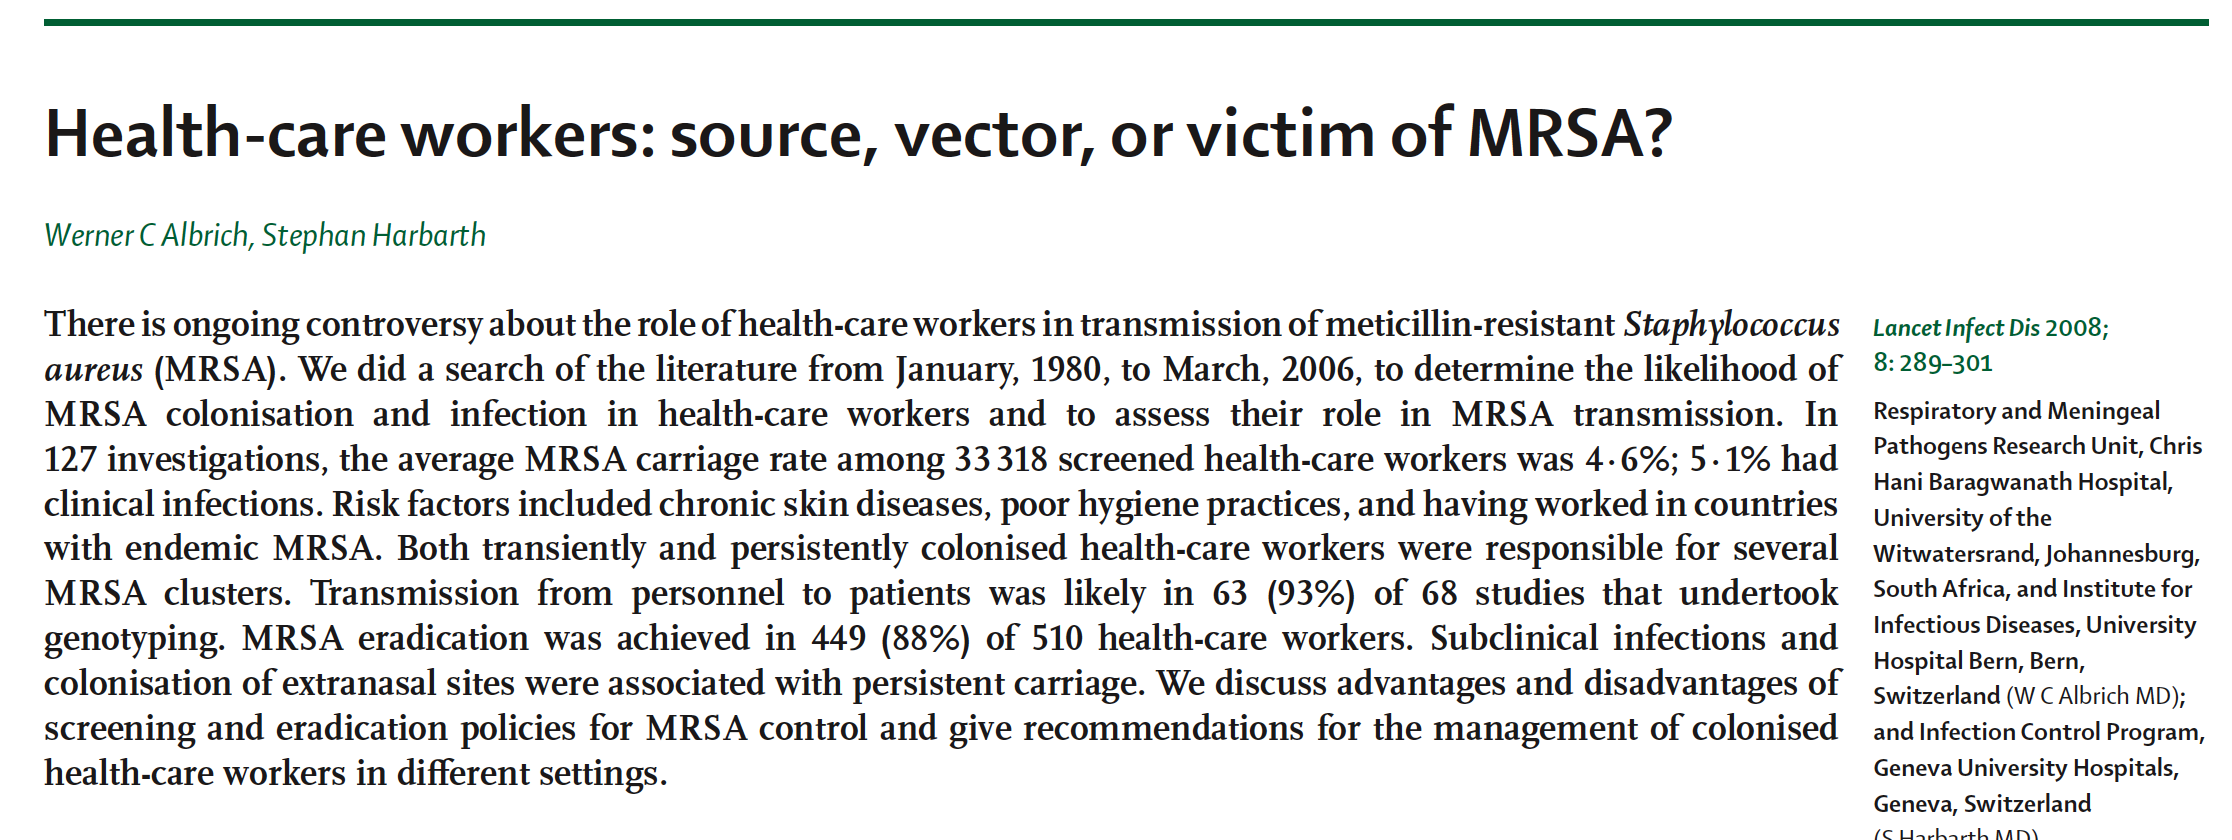 Terveydenhuollon ammattilaiset ovat yleensä vektoreita, harvemmin epidemioiden lähteenä Työtekijöiden systemaattisista MRSA-seulonnoista voi olla hyötyä